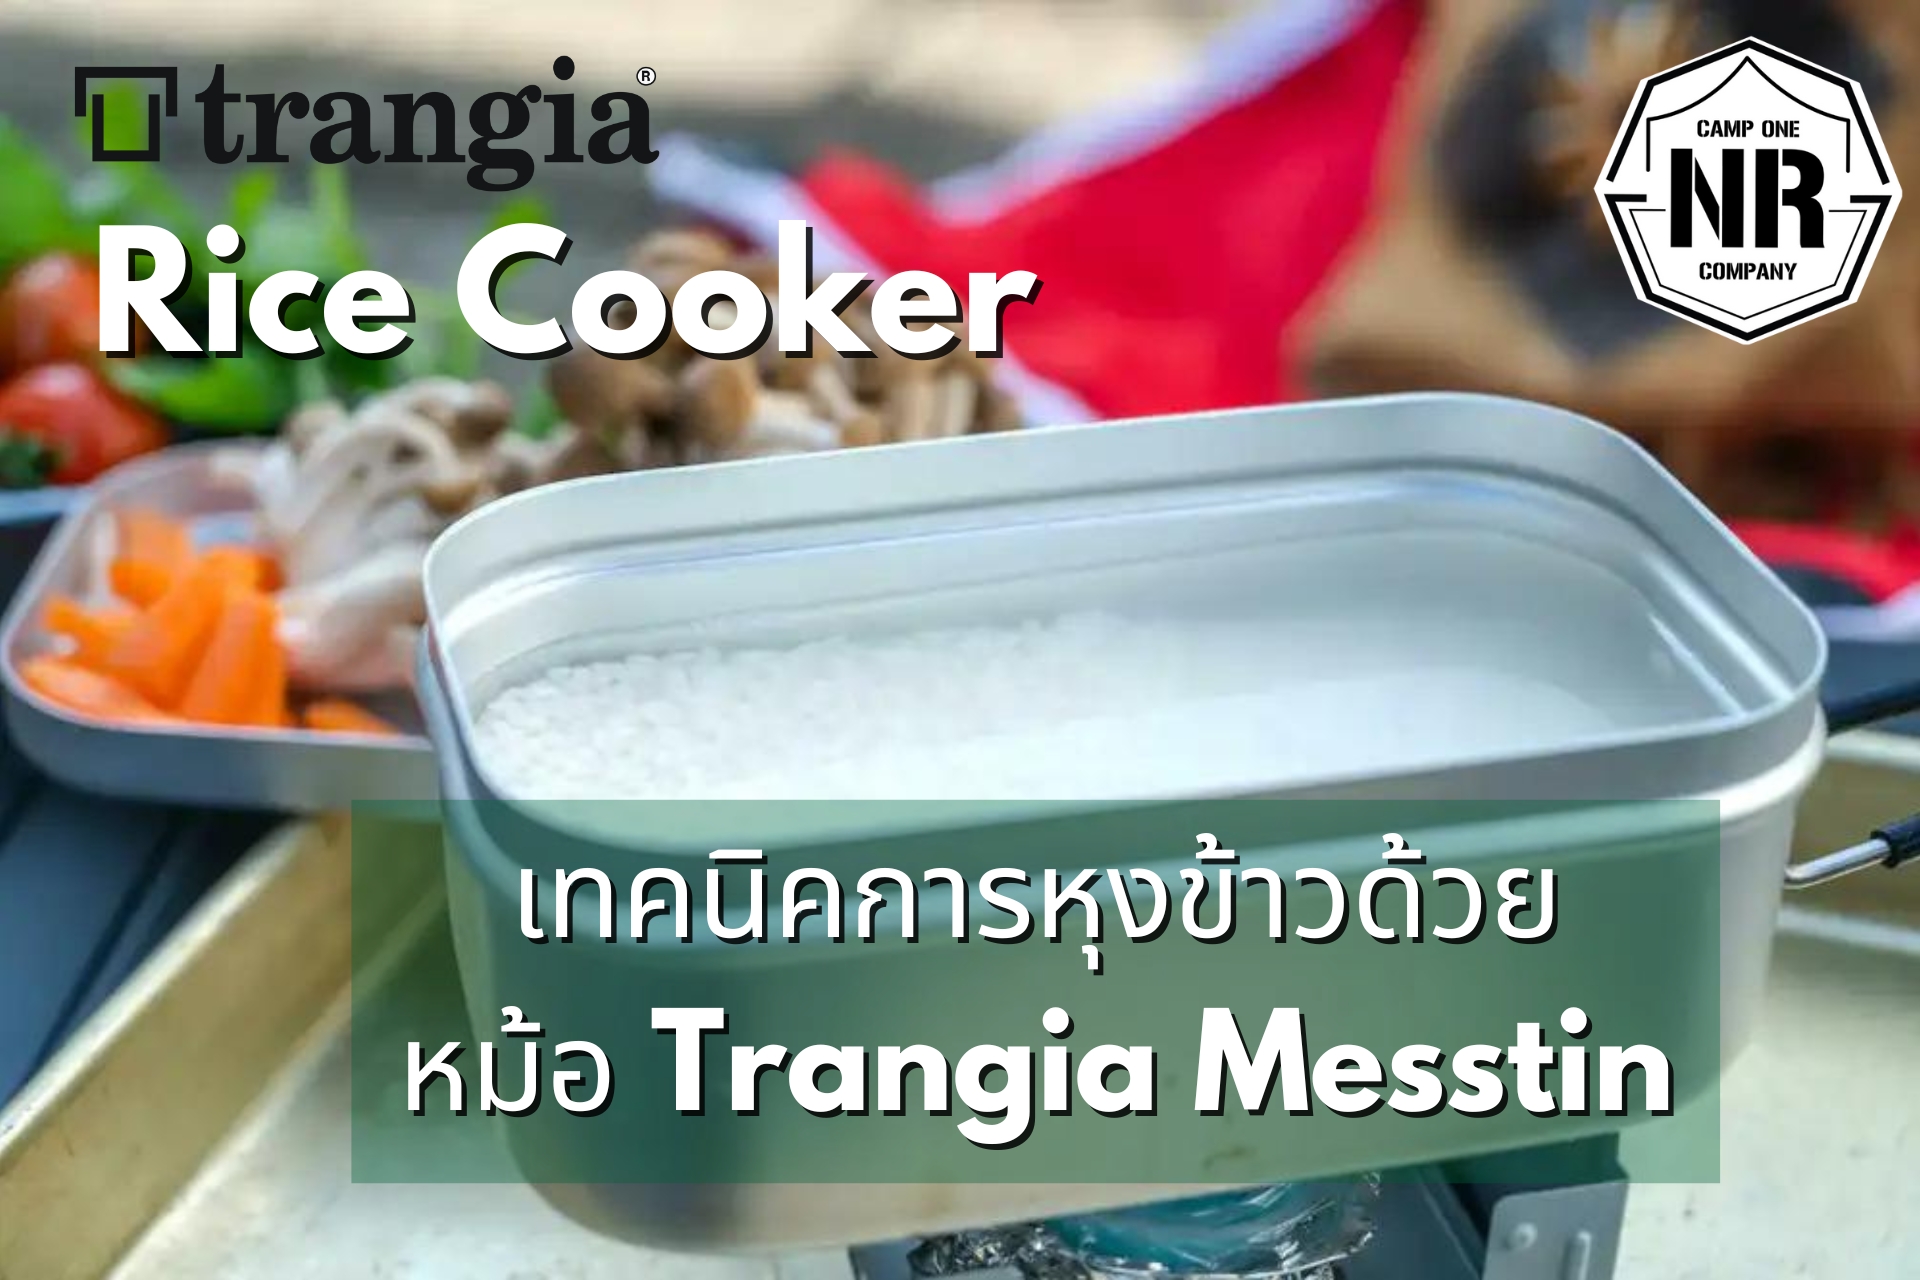 Rice Cooker เทคนิคการหุงข้าวด้วย หม้อ Trangia Messtin